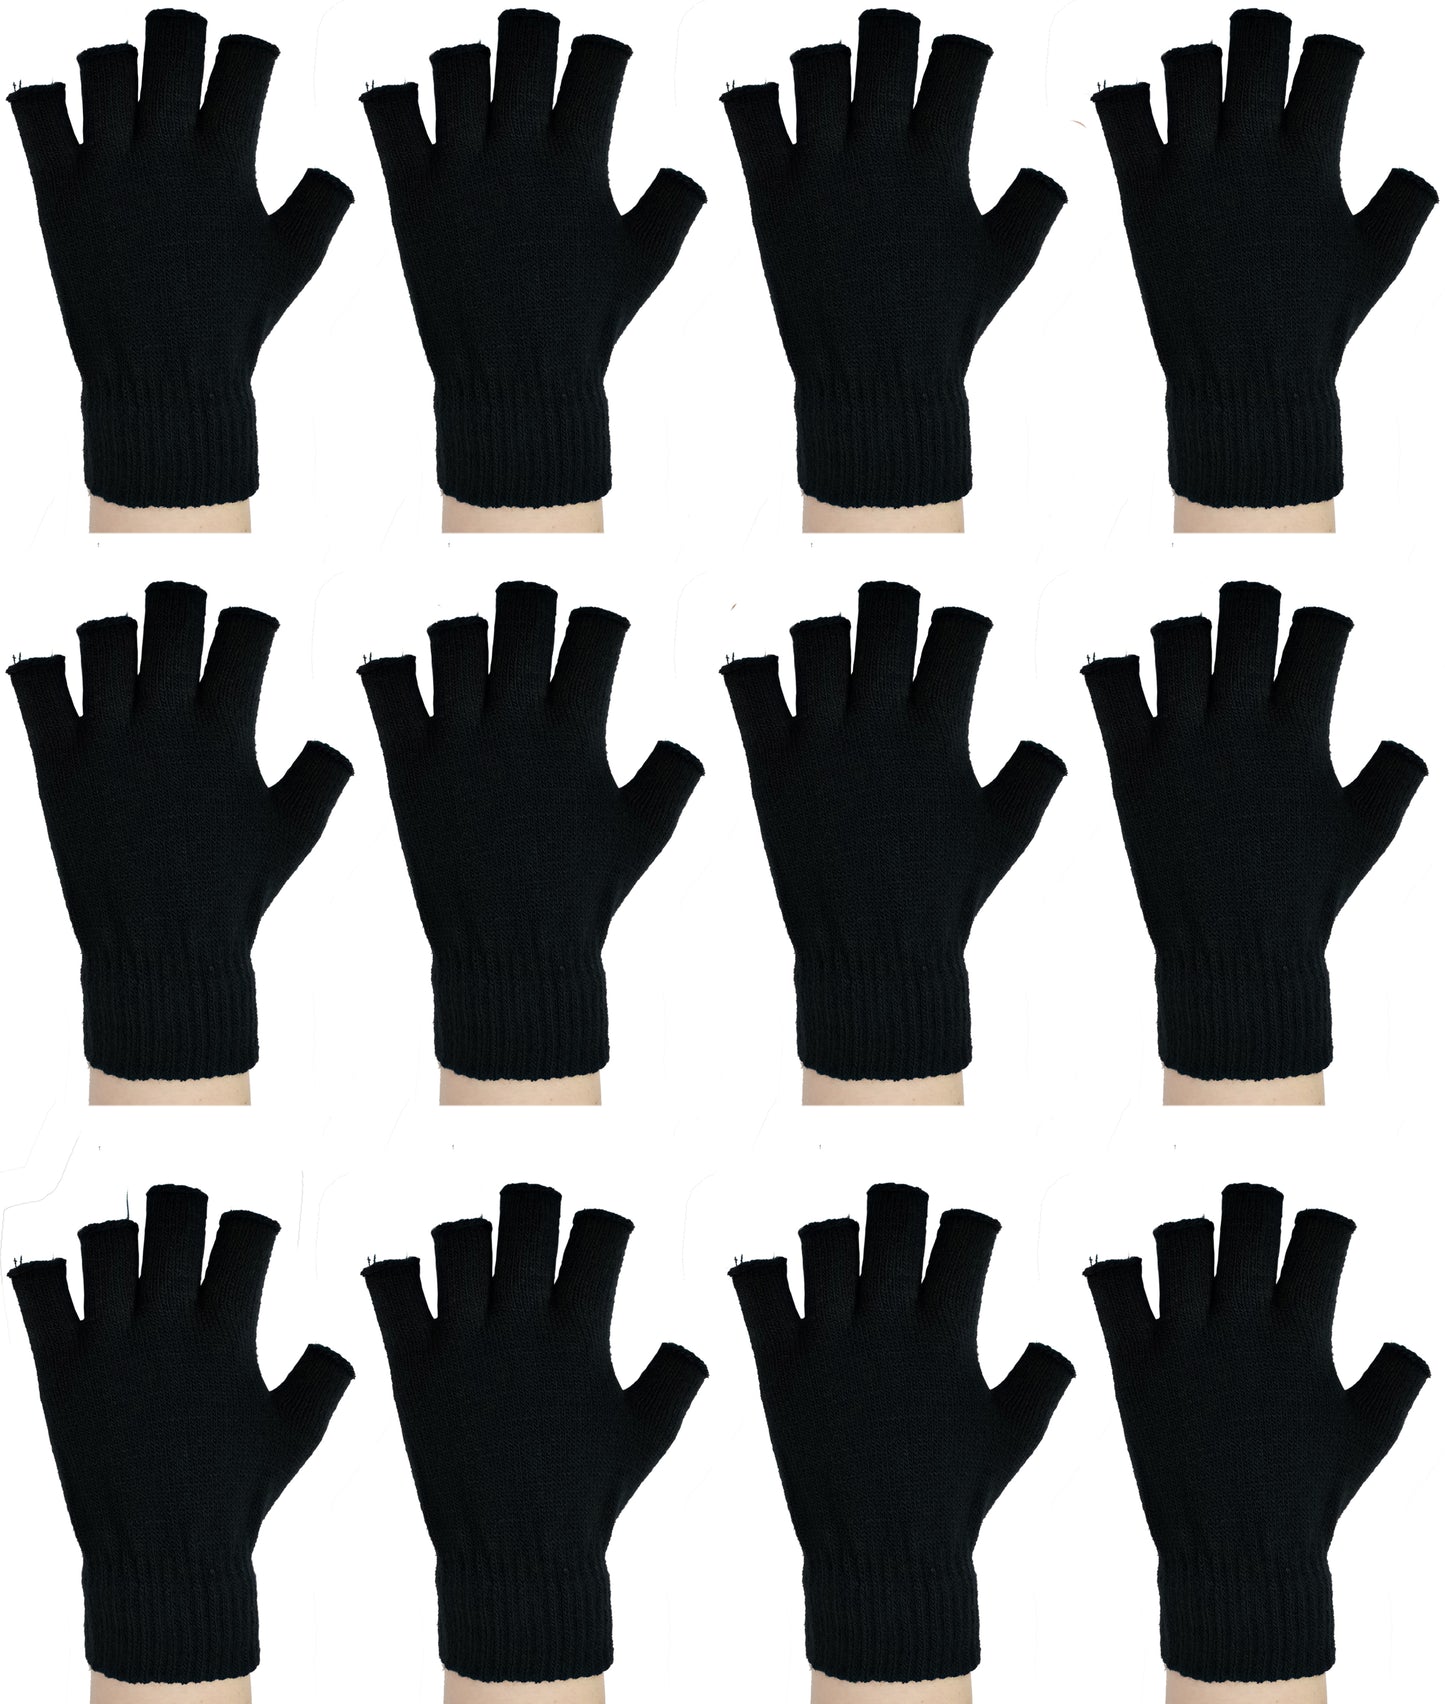 Fingerless Magic Gloves for Men and Women